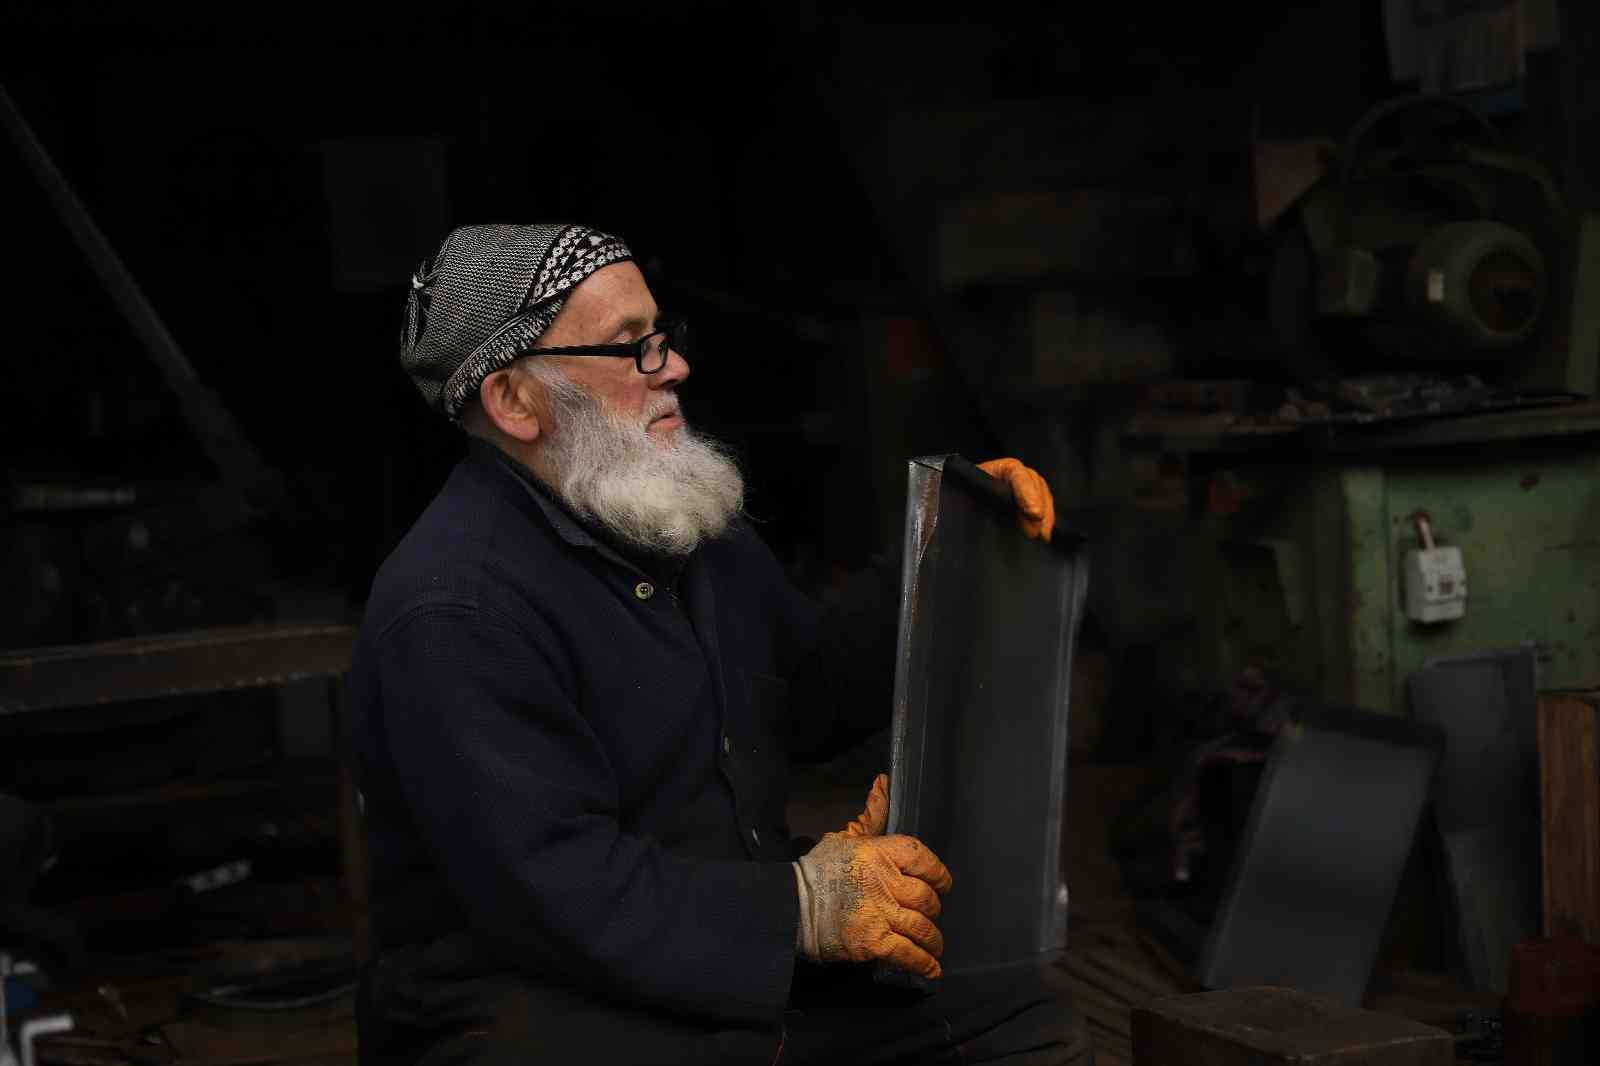 75 yaşındaki soba ustası unutulmaya yüz tutmuş mesleğini yaşatmaya çalışıyor #rize